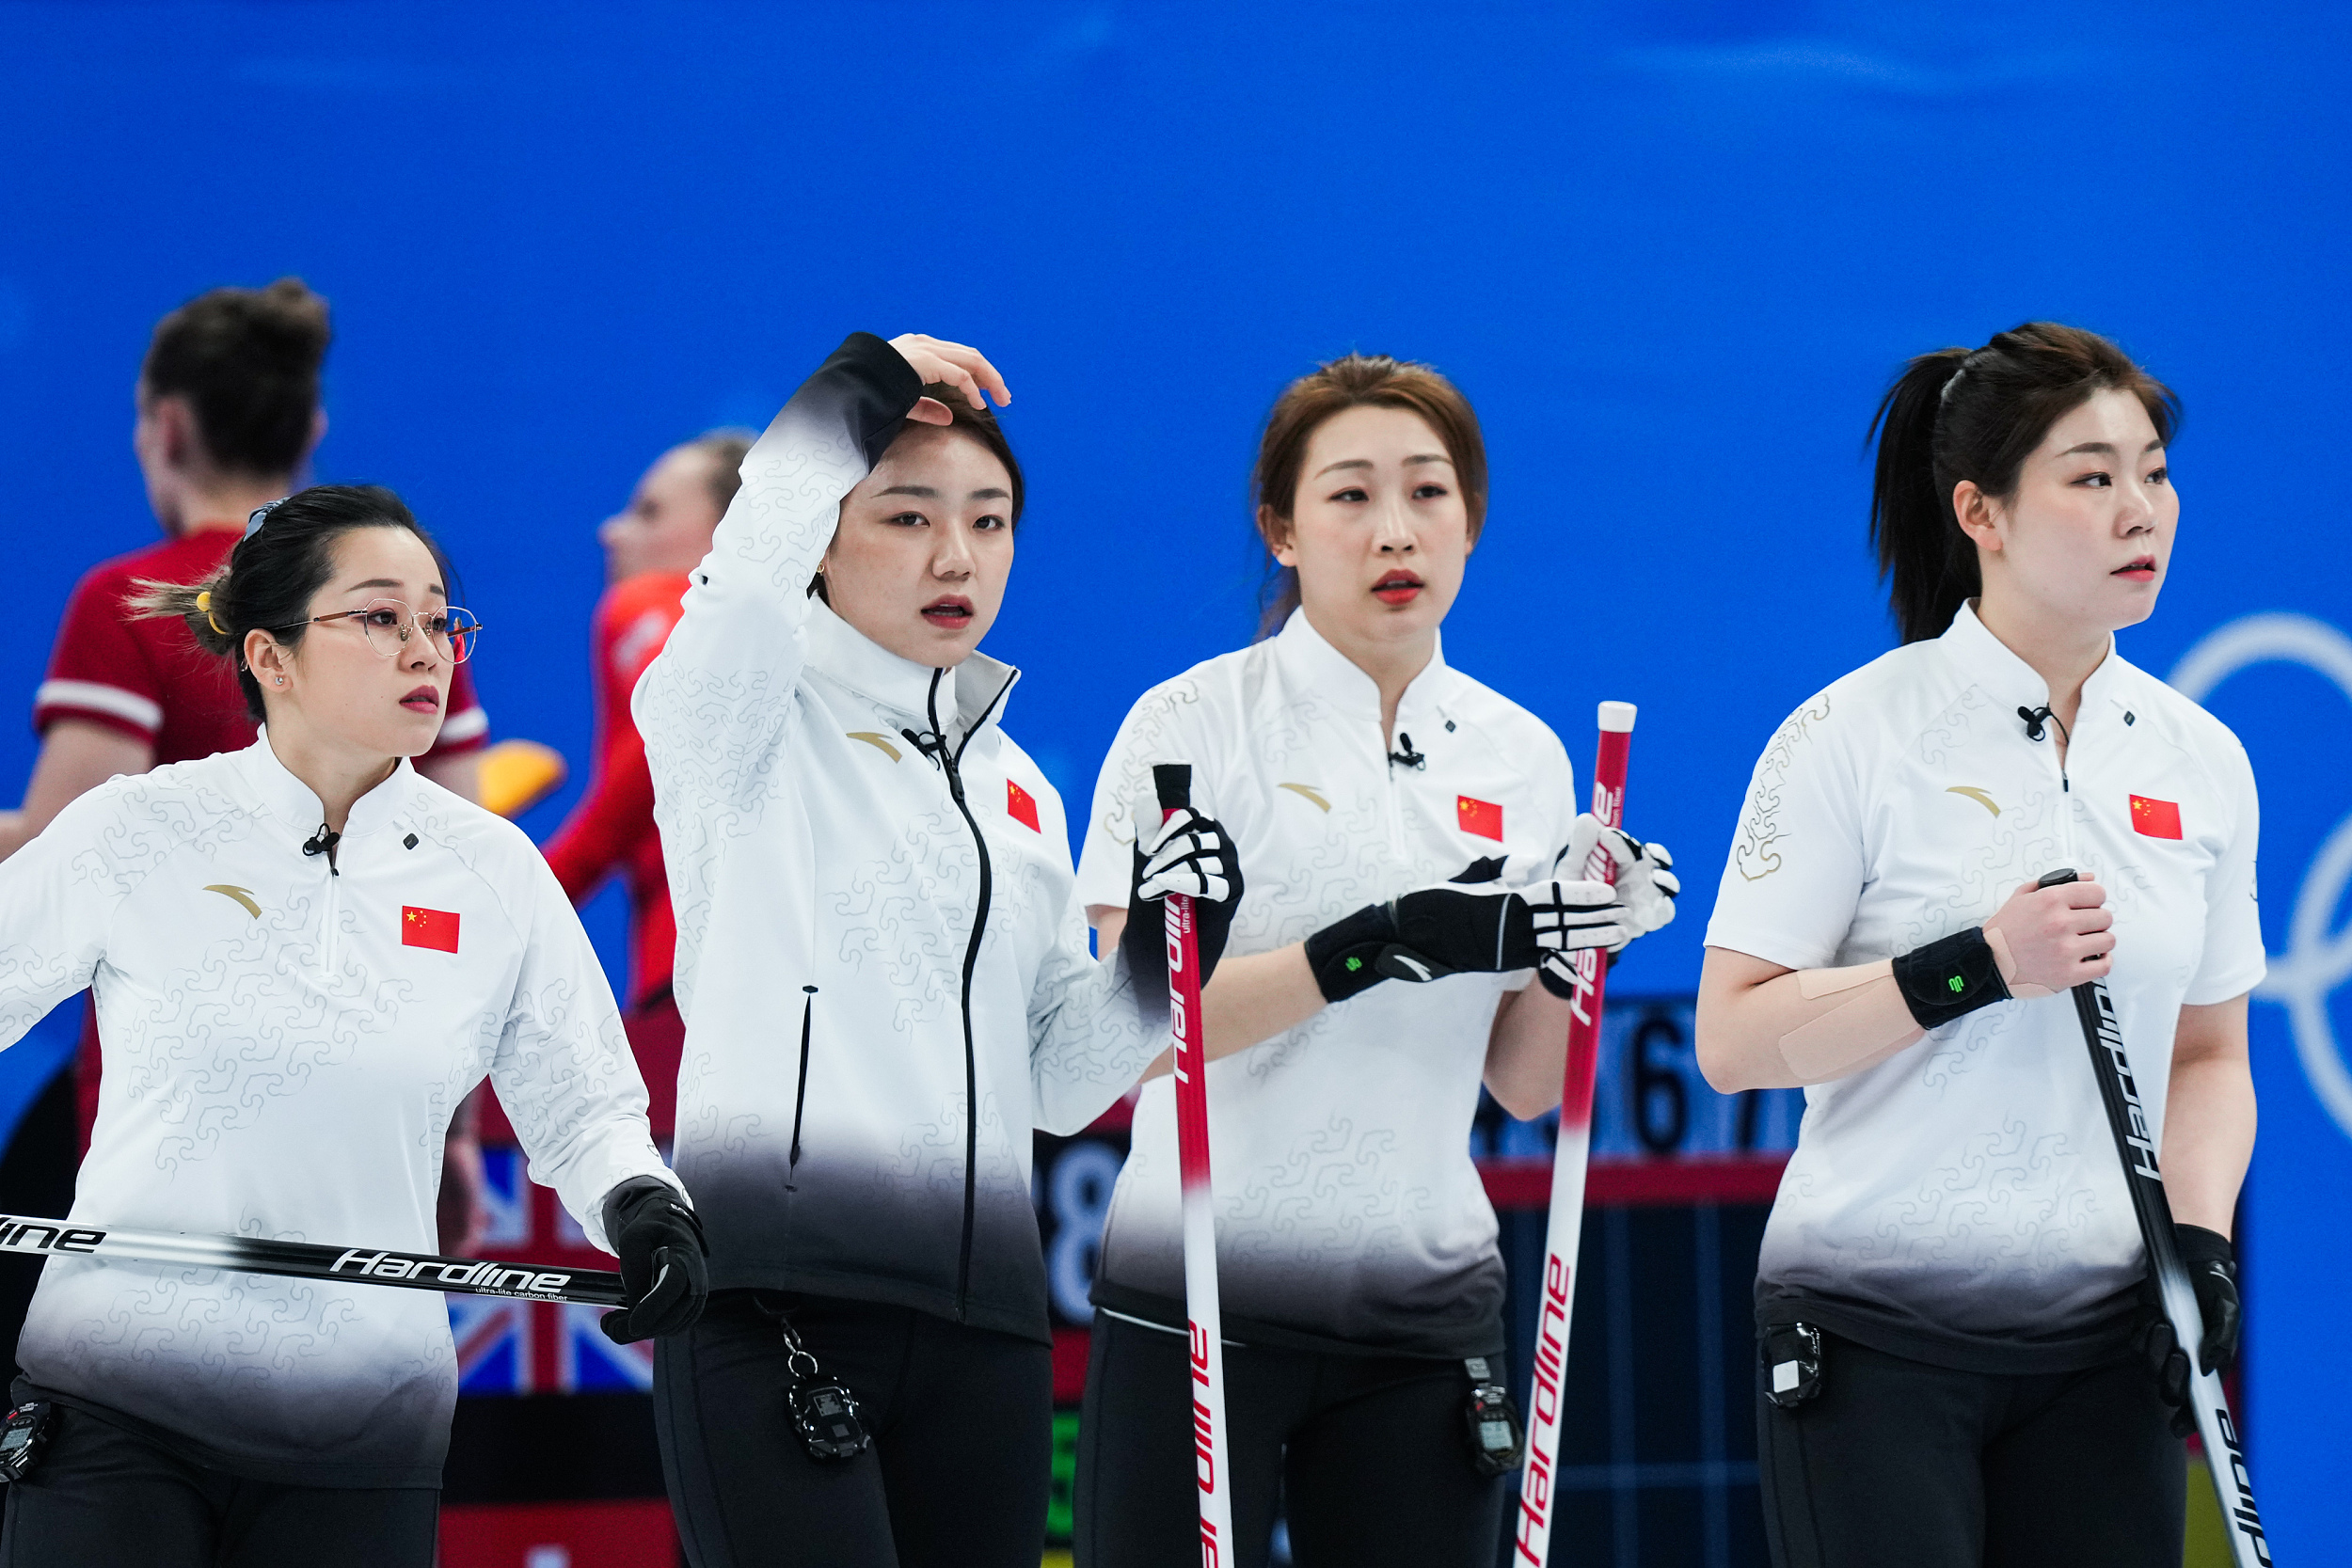 中国冰壶女队队员图片